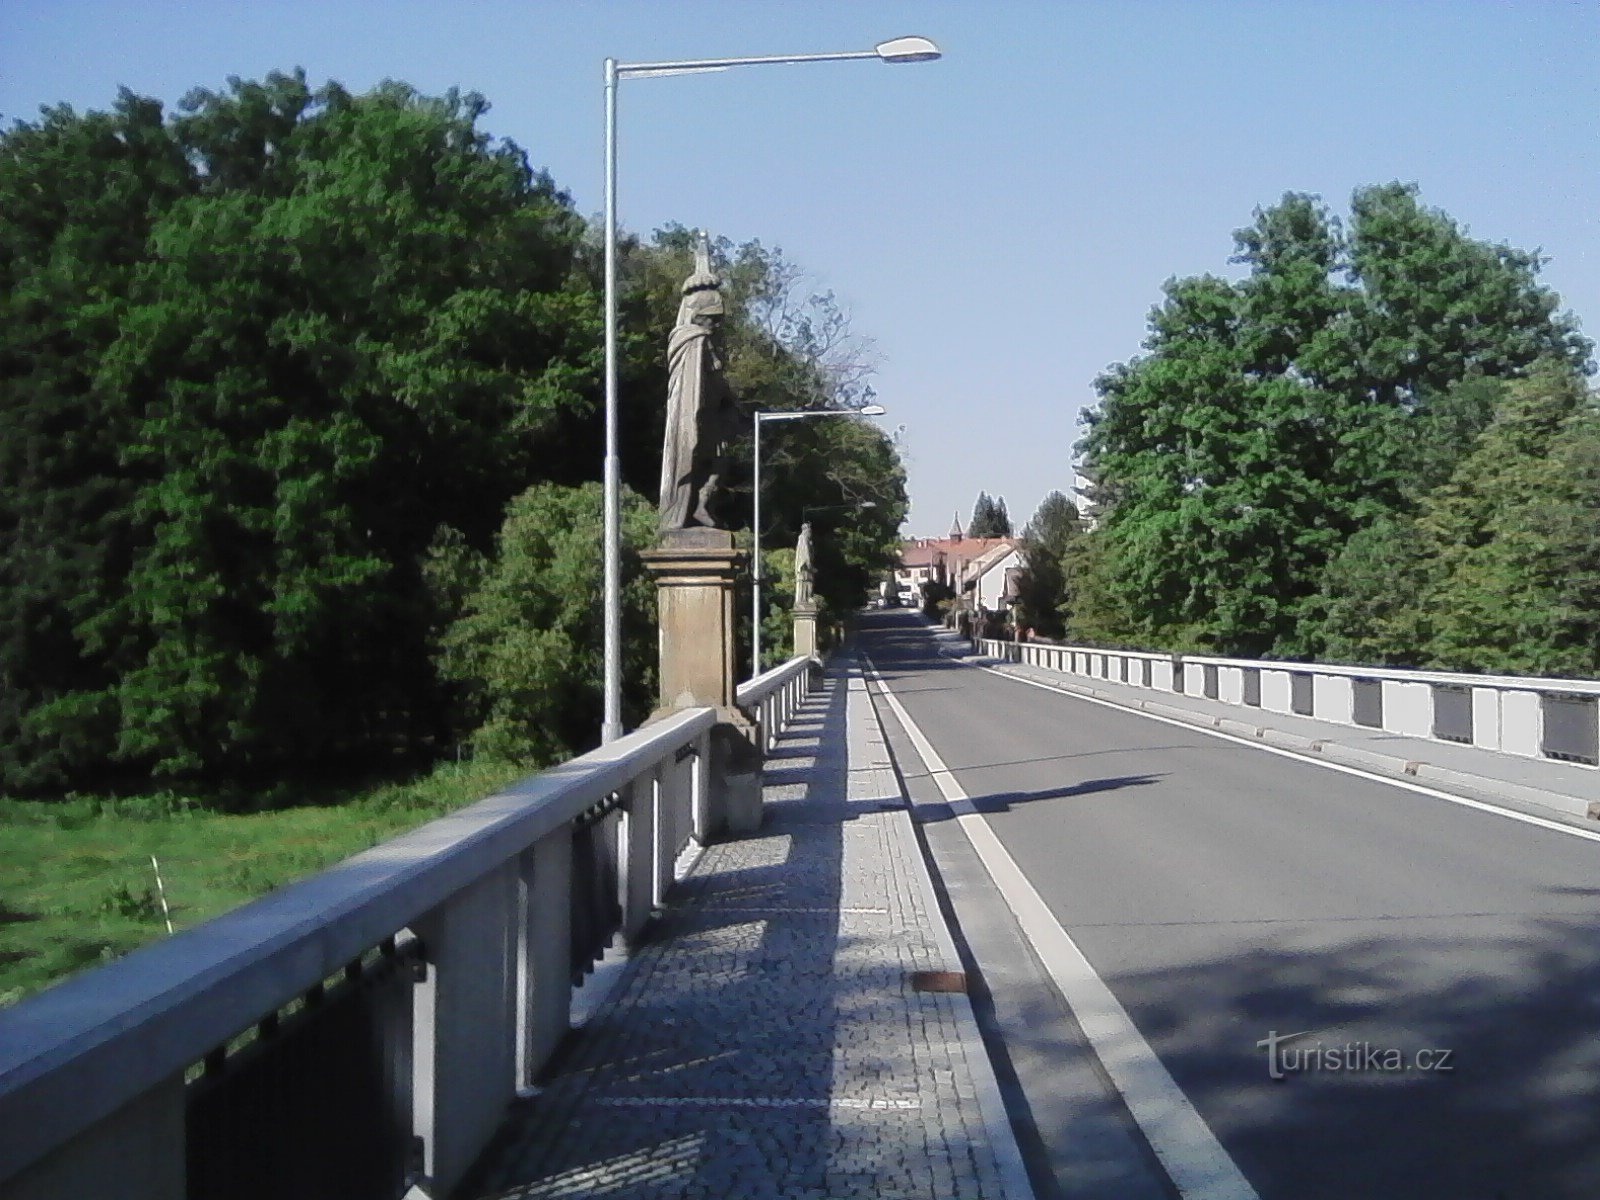 1. Empirowy most Karla Burki z Sedlec do Prčic z rzeźbami św. Floriana i św.